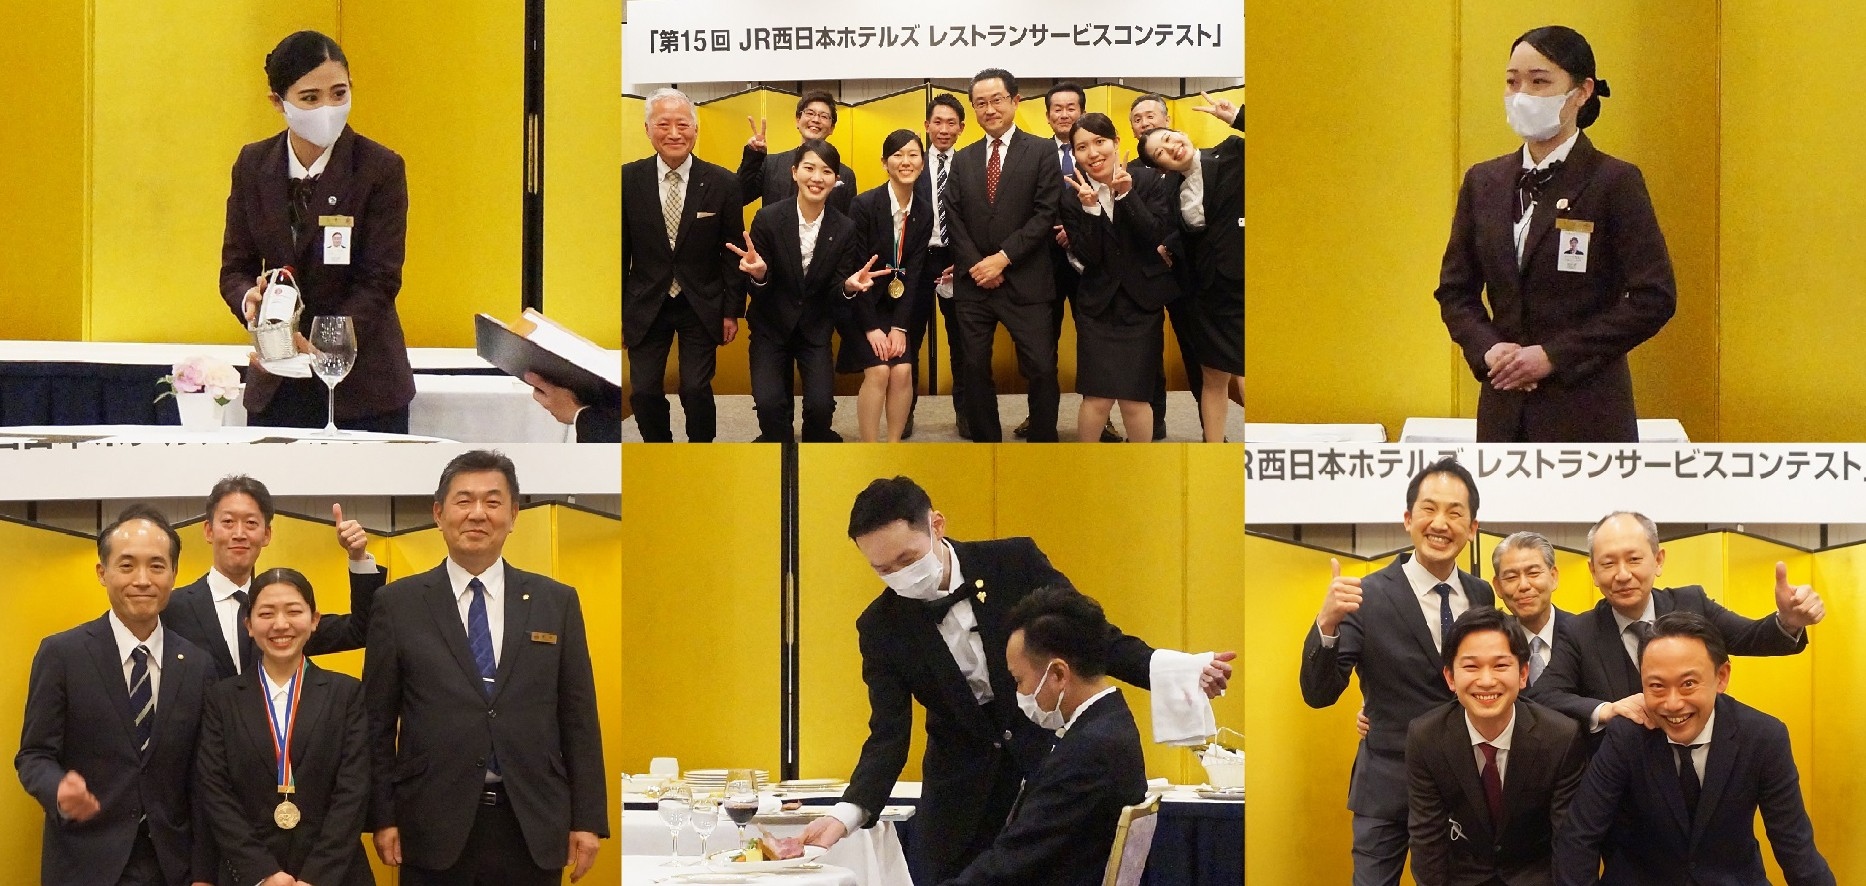 若手ホテリエの成長を目指し2年ぶりに開催 「JR西日本ホテルズ レストランサービスコンテスト」